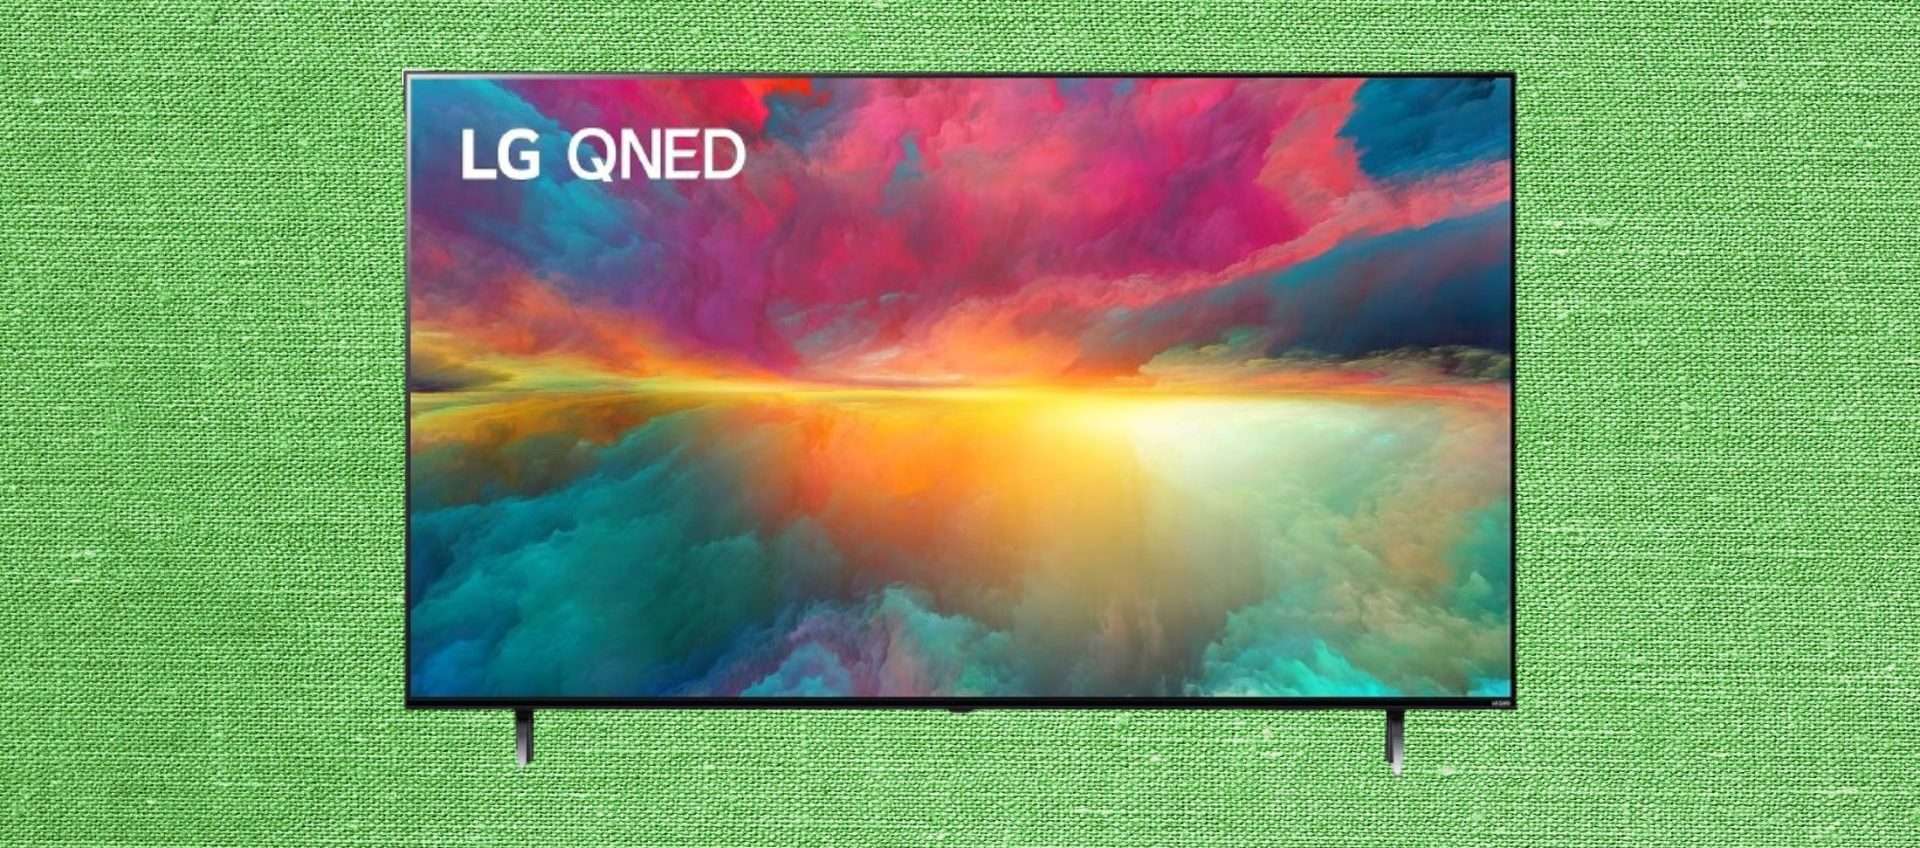 TV LG QNED 4K da 75'' in offerta: risparmi più di 200€, anche a rate